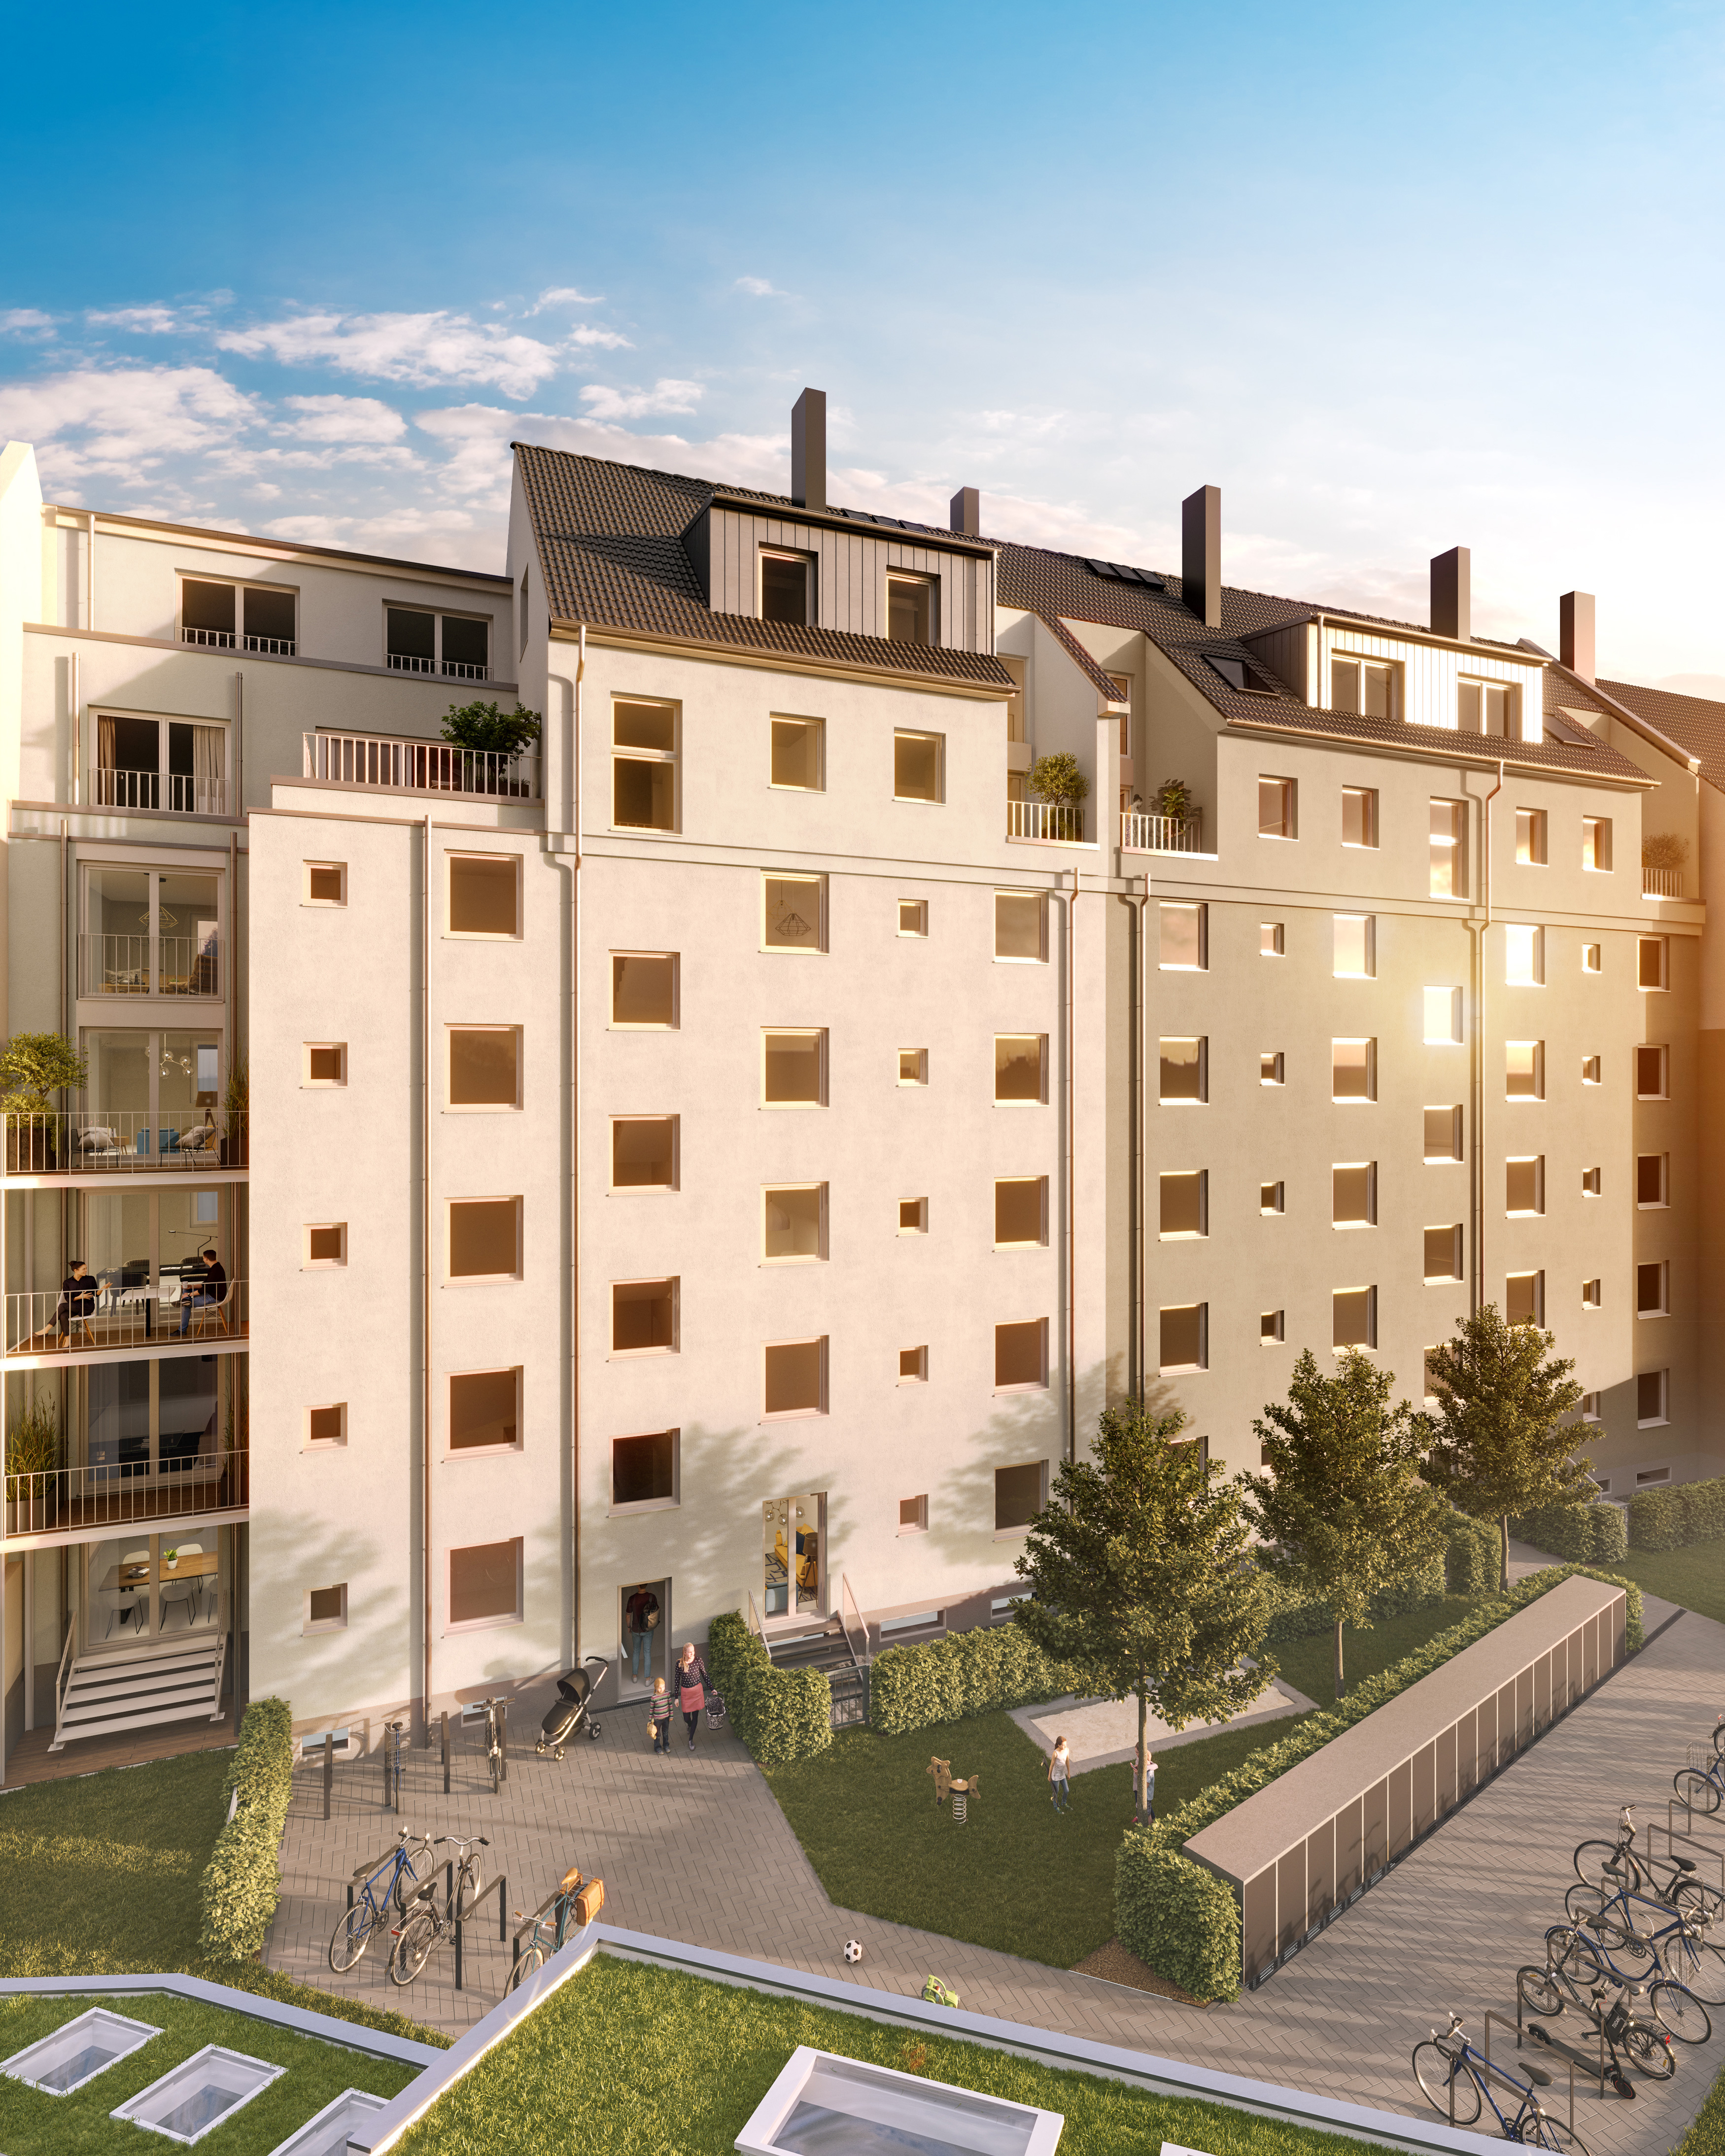 Viel Platz und großzügige Dachterrassen: Moderne 3- und 5-Zimmer-Wohnungen in Köln-Neustadt-Süd zum Kauf
					©Unverbindliche Darstellung
				